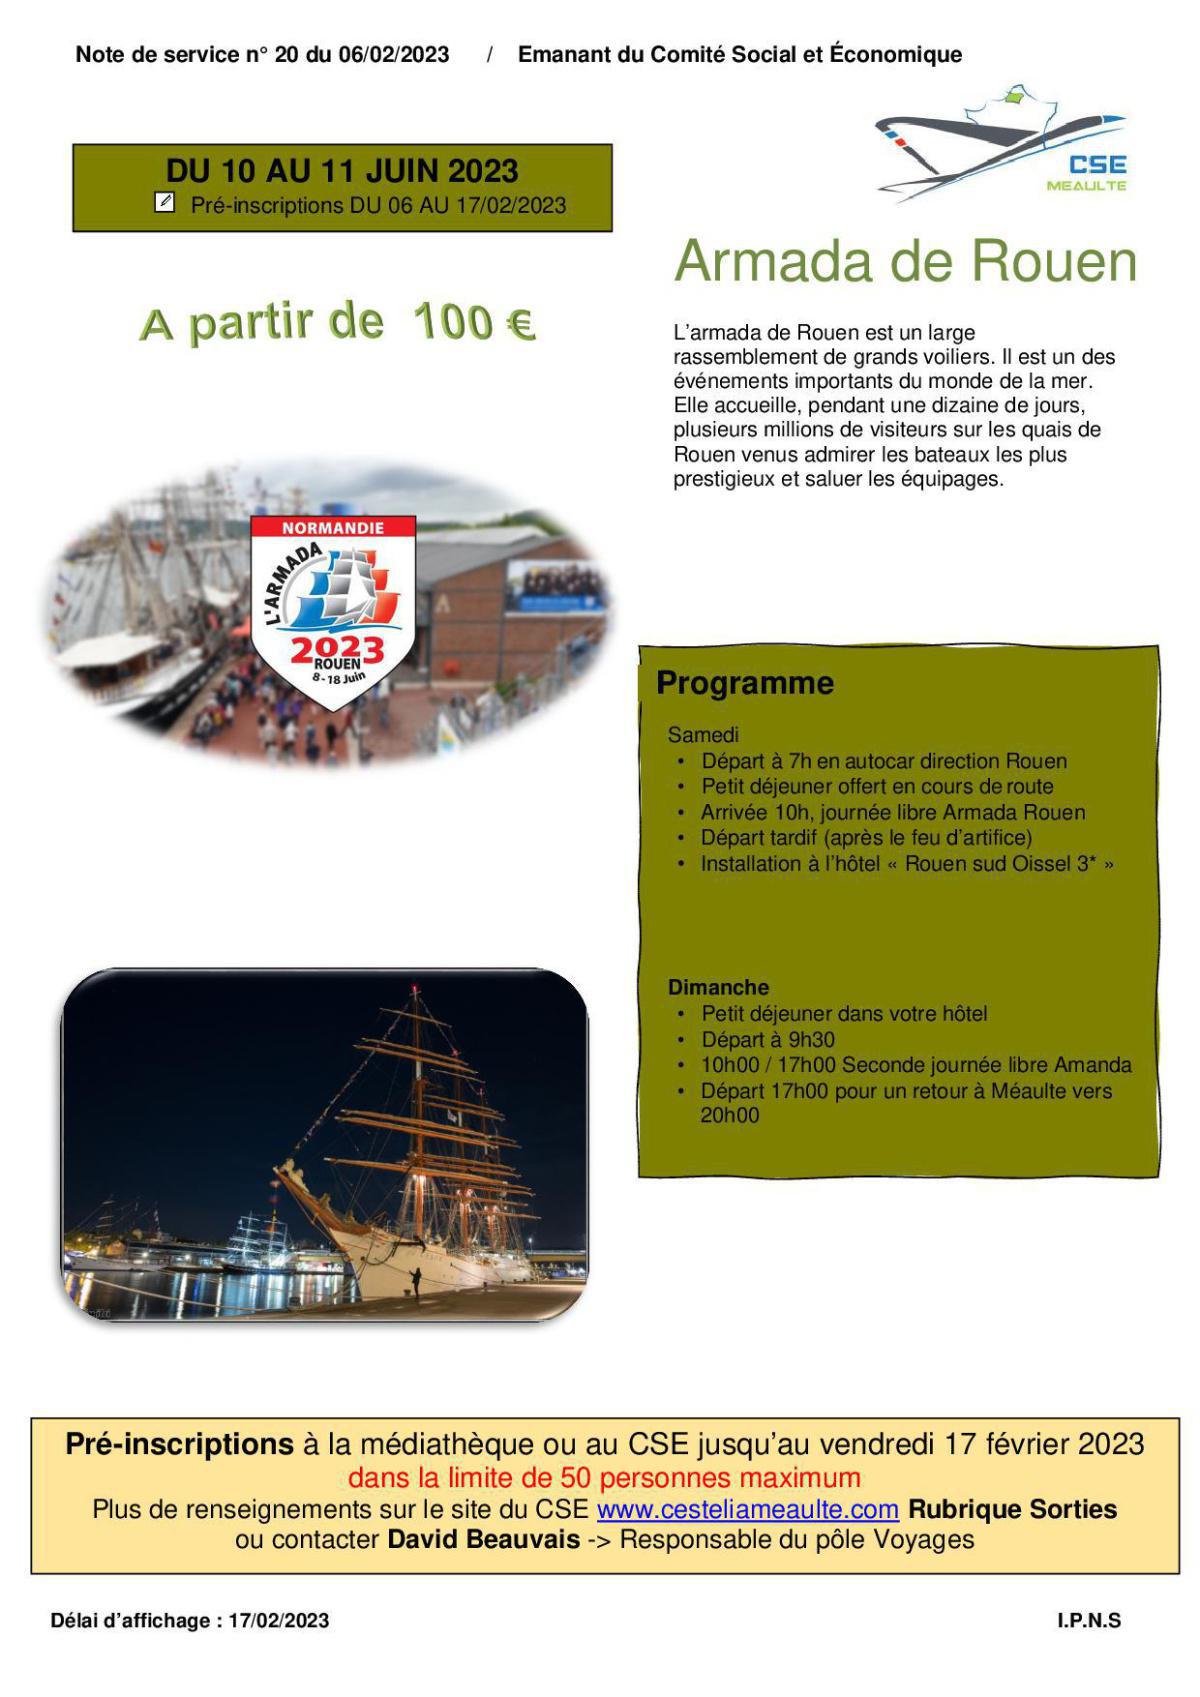 Armada de Rouen du 10 au 11 juin